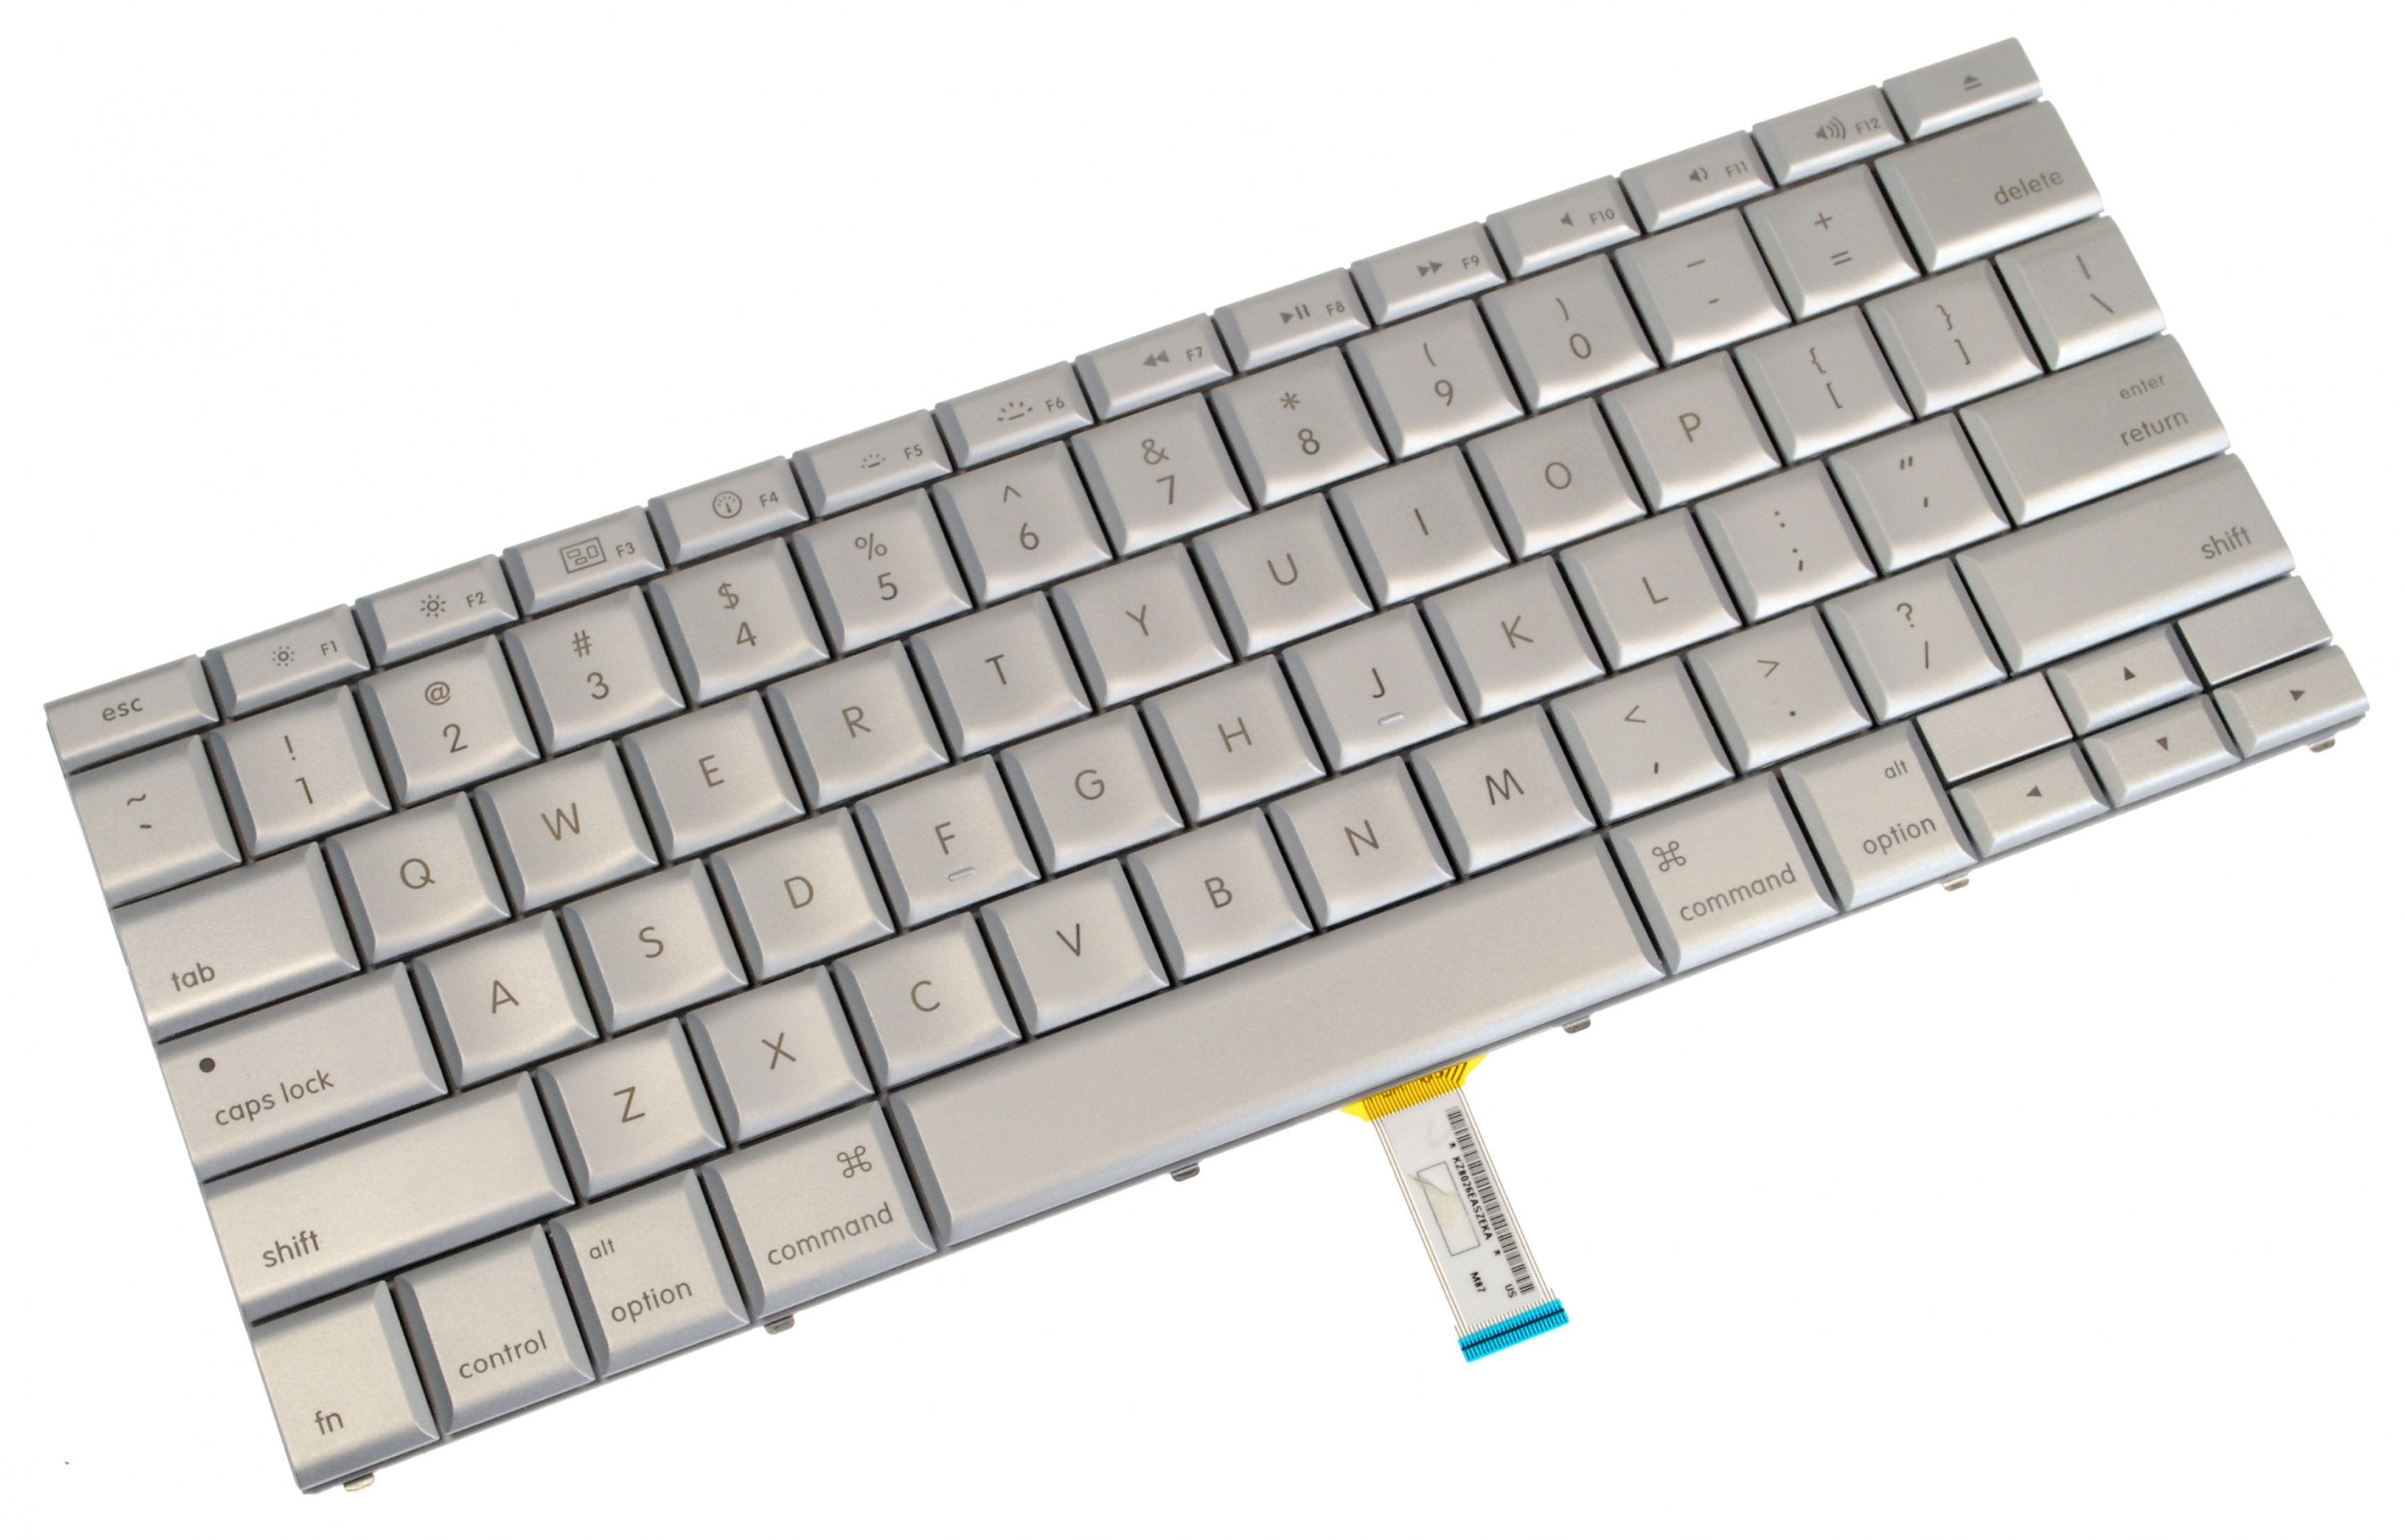 MacBook Pro 15" (Model A1260) Keyboard